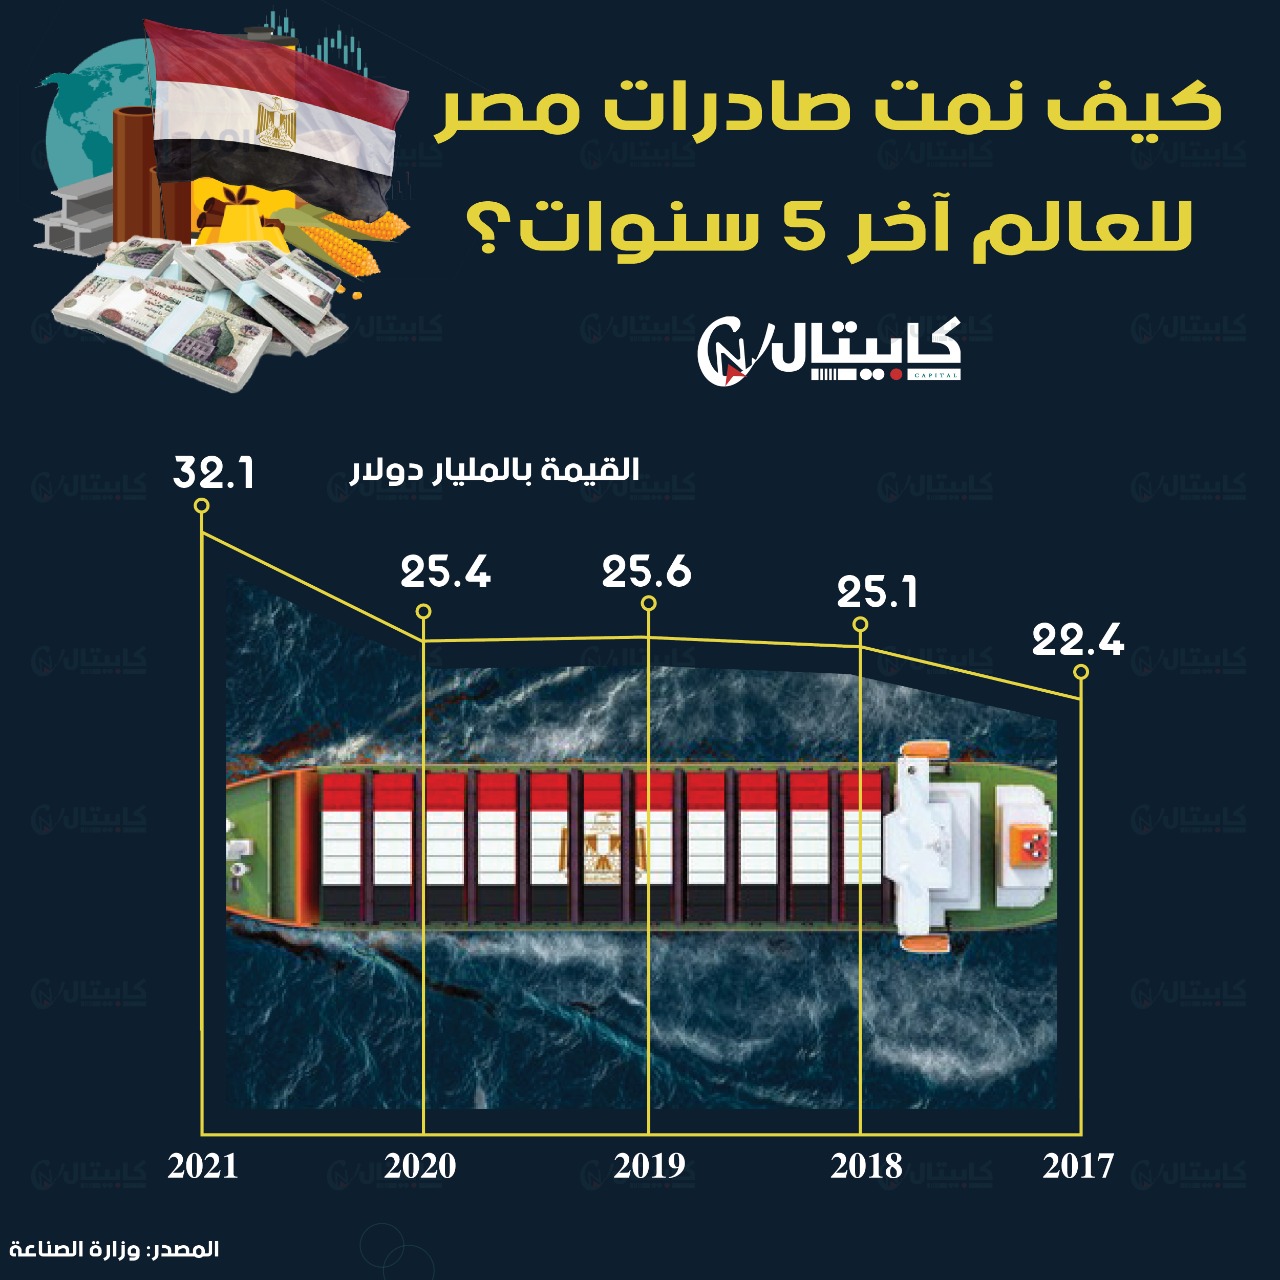 تطور الصادرات المصرية آخر 5 سنوات